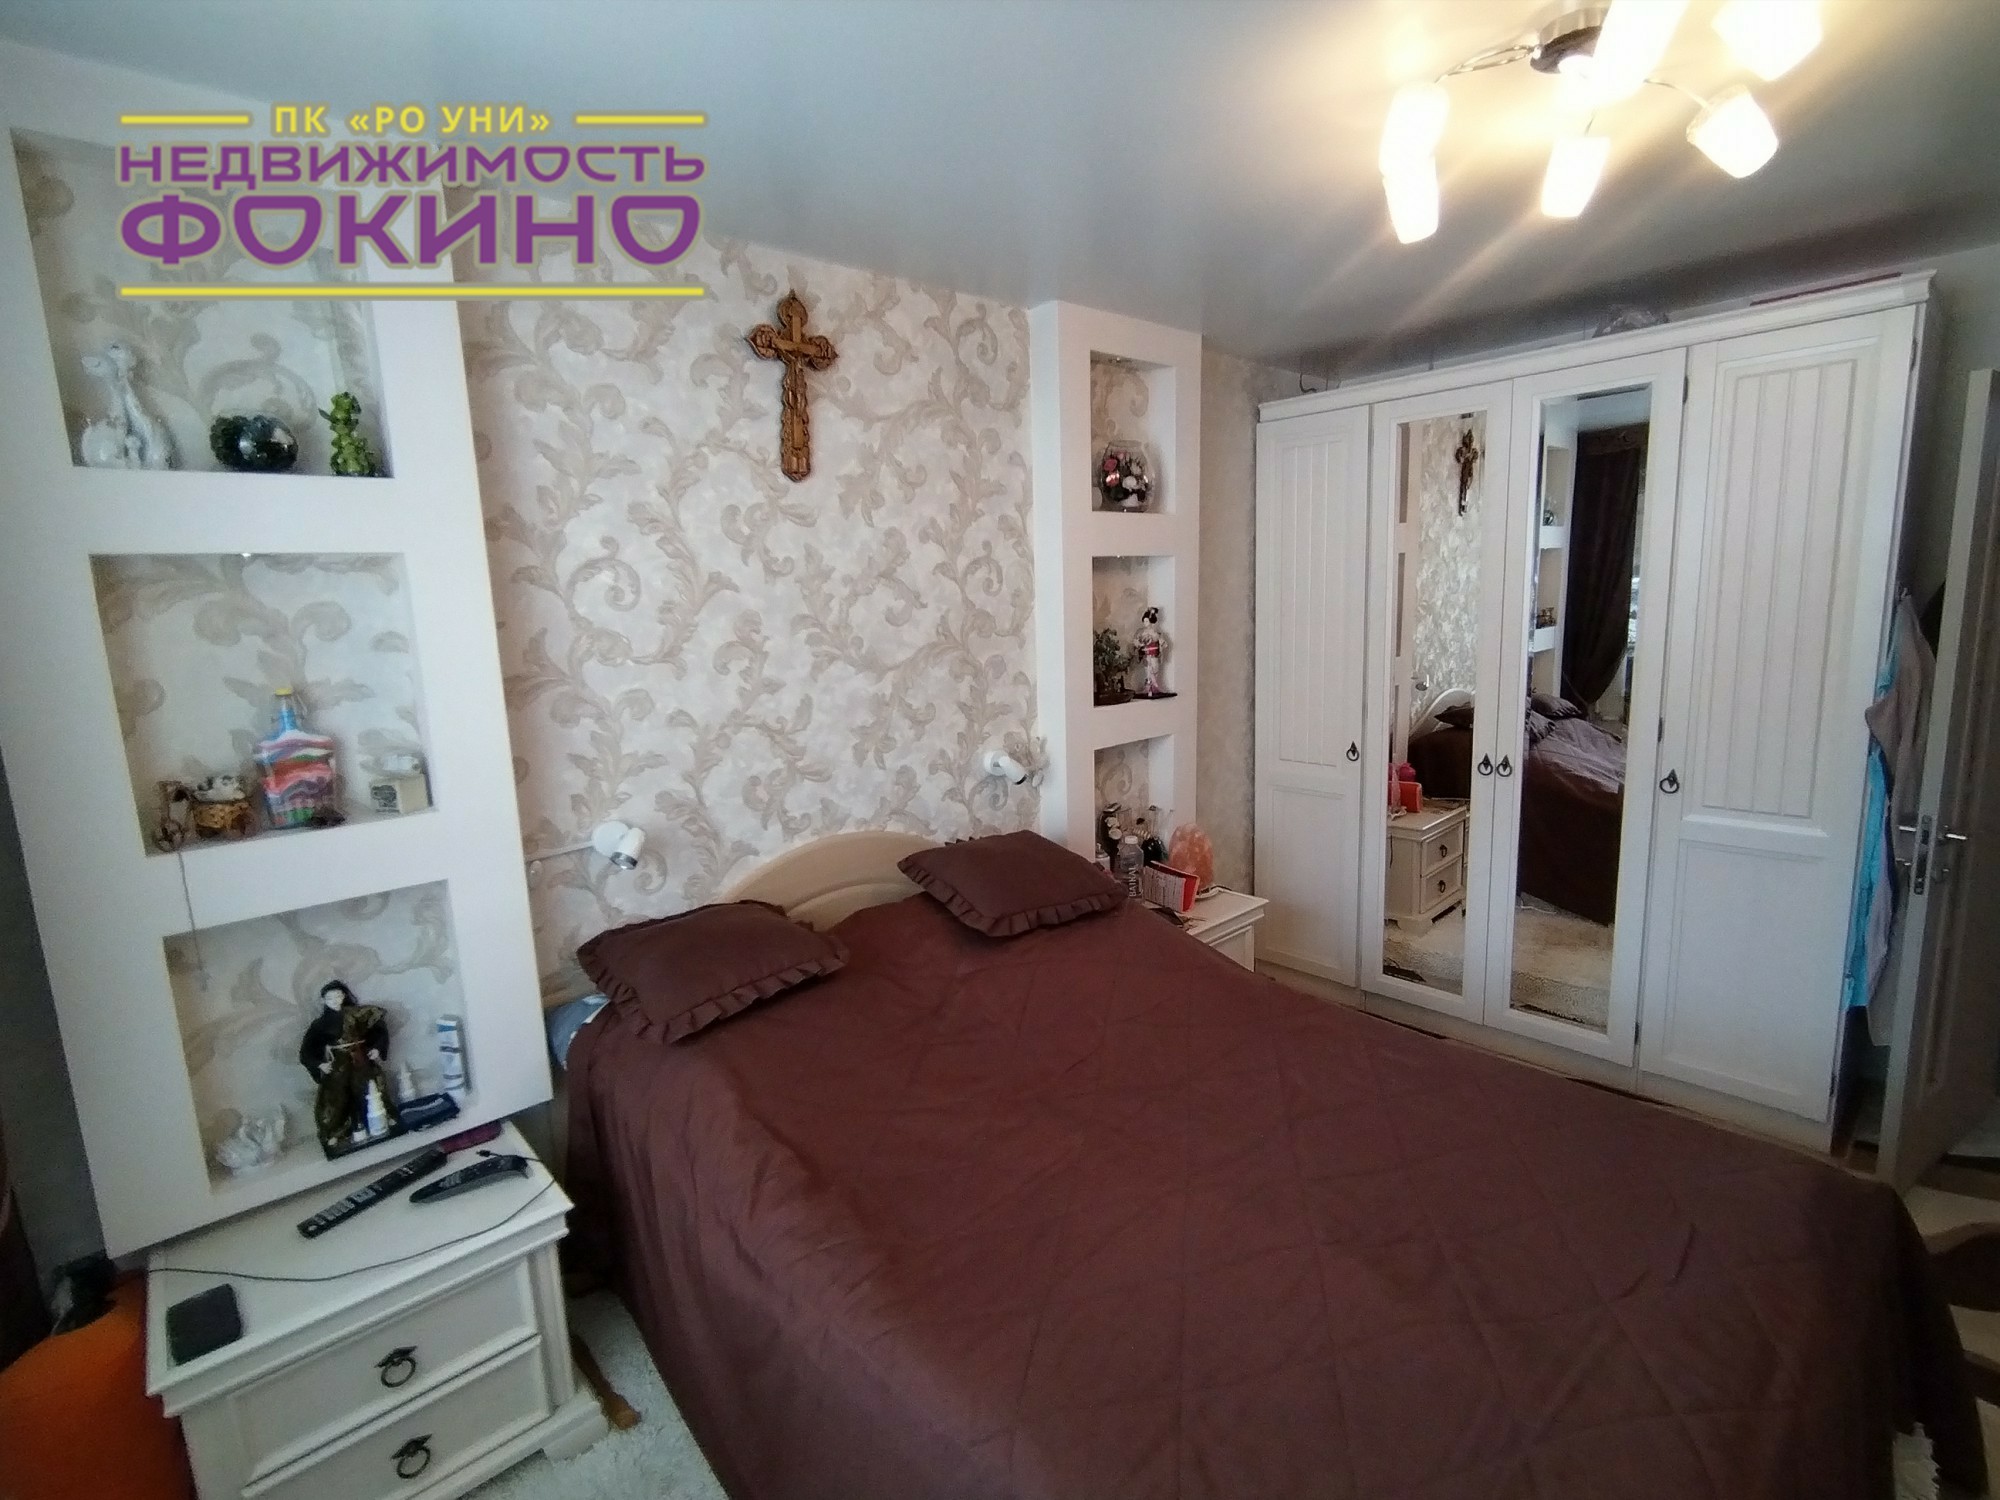 Купить квартиру в приморском крае фокино. Купить квартиру в Фокино Приморский край без посредников.